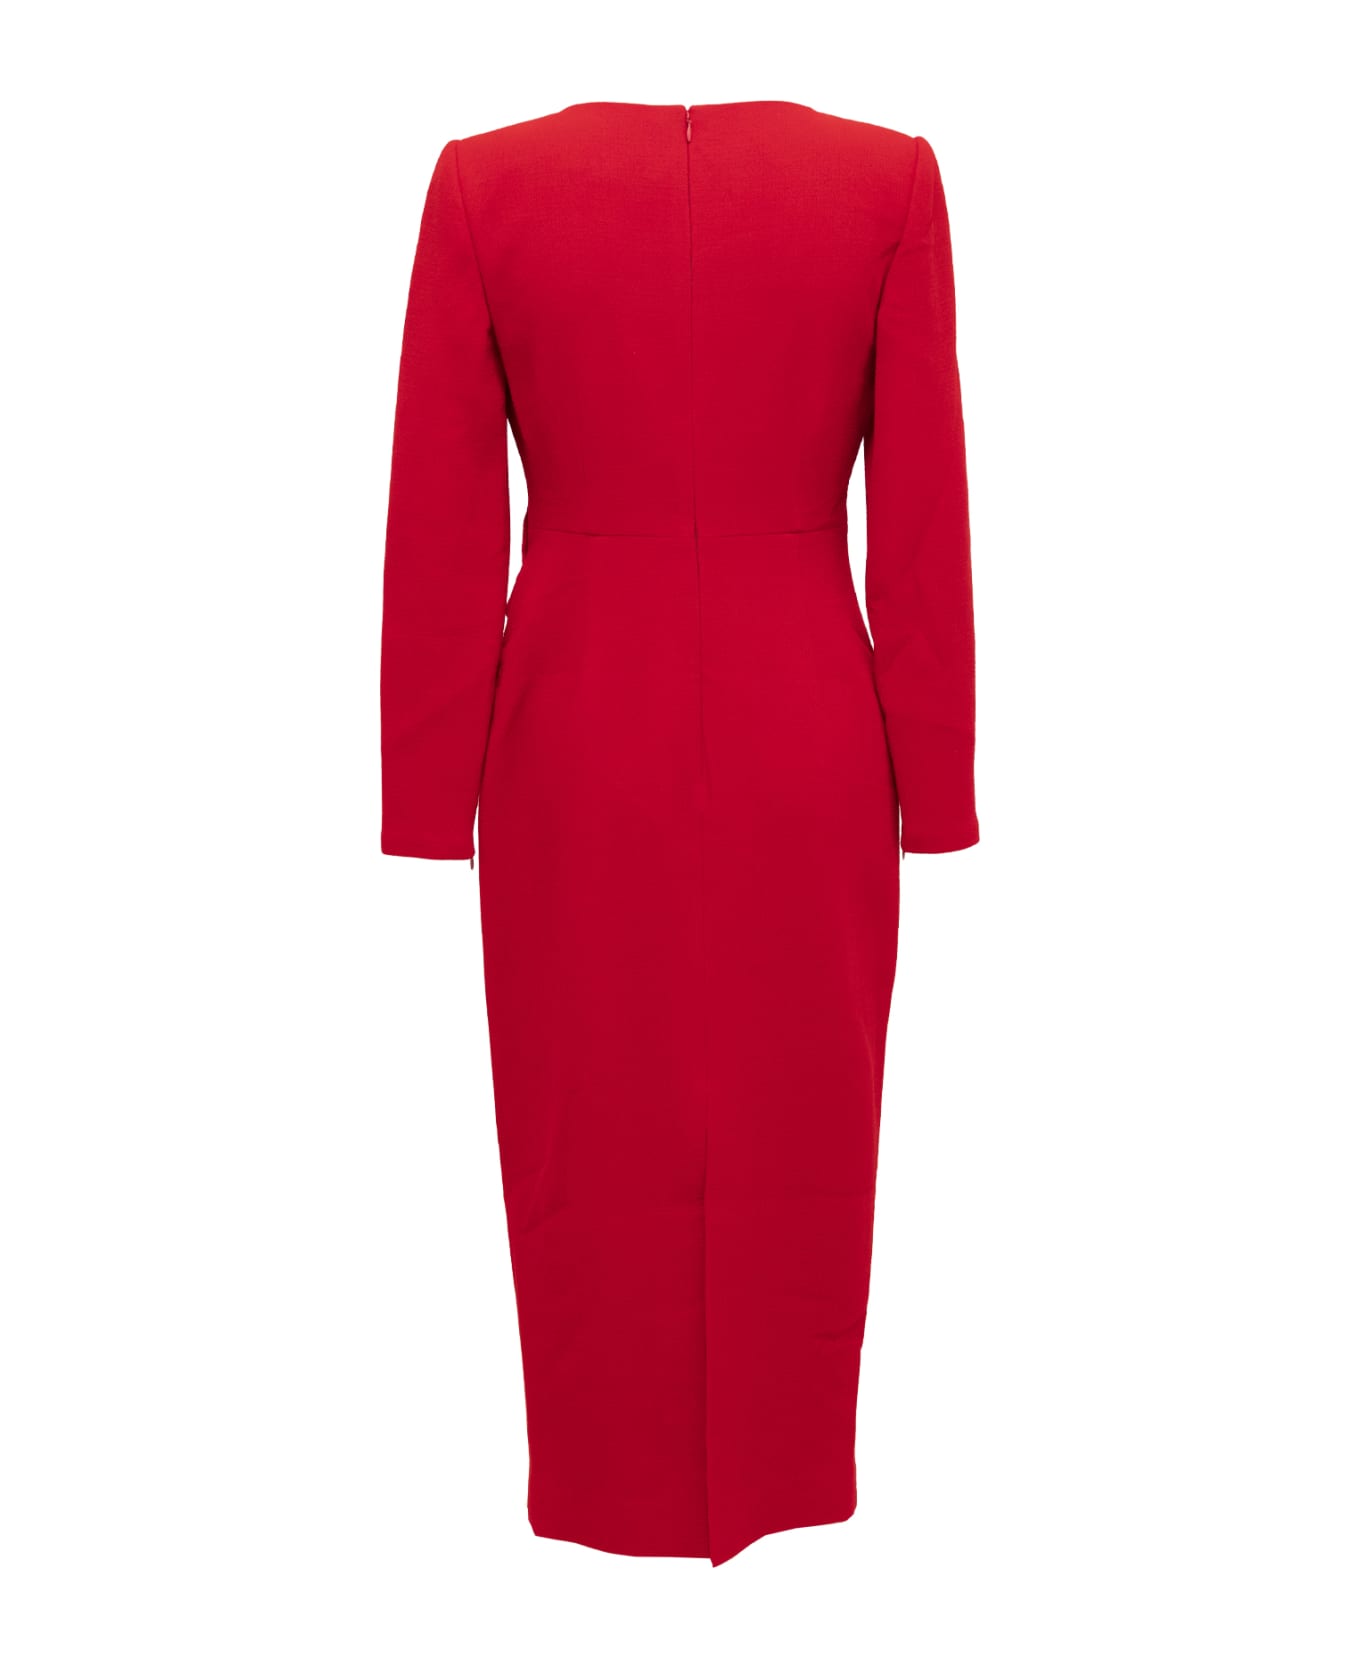 Roland Mouret Dress - Red